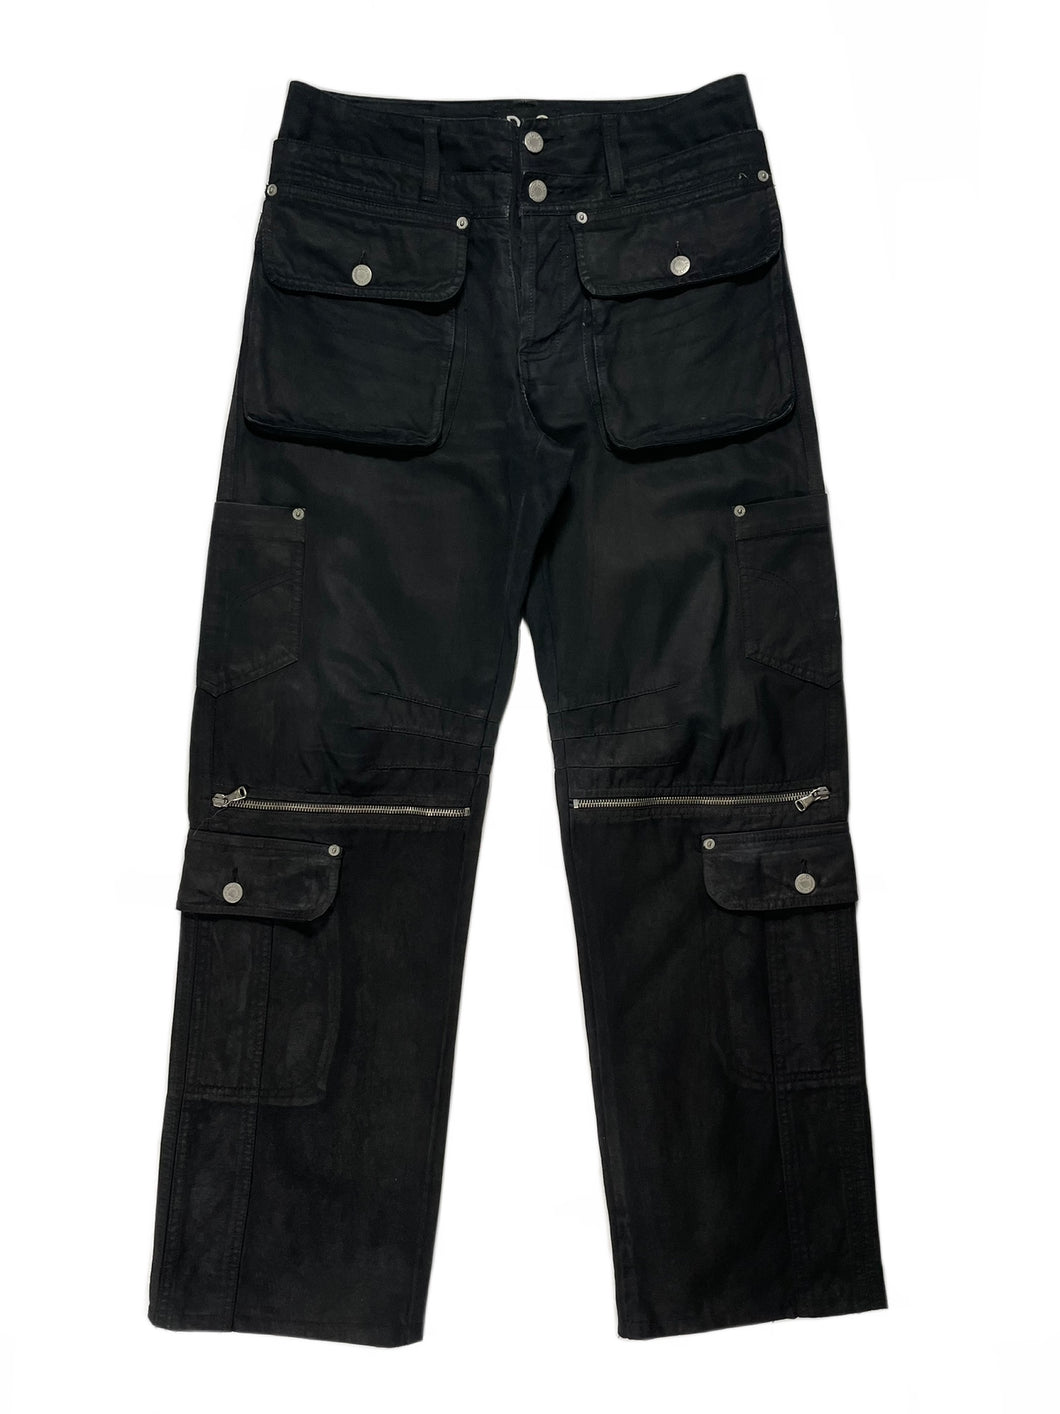 2000’s Dolce & Gabbana cargo pants